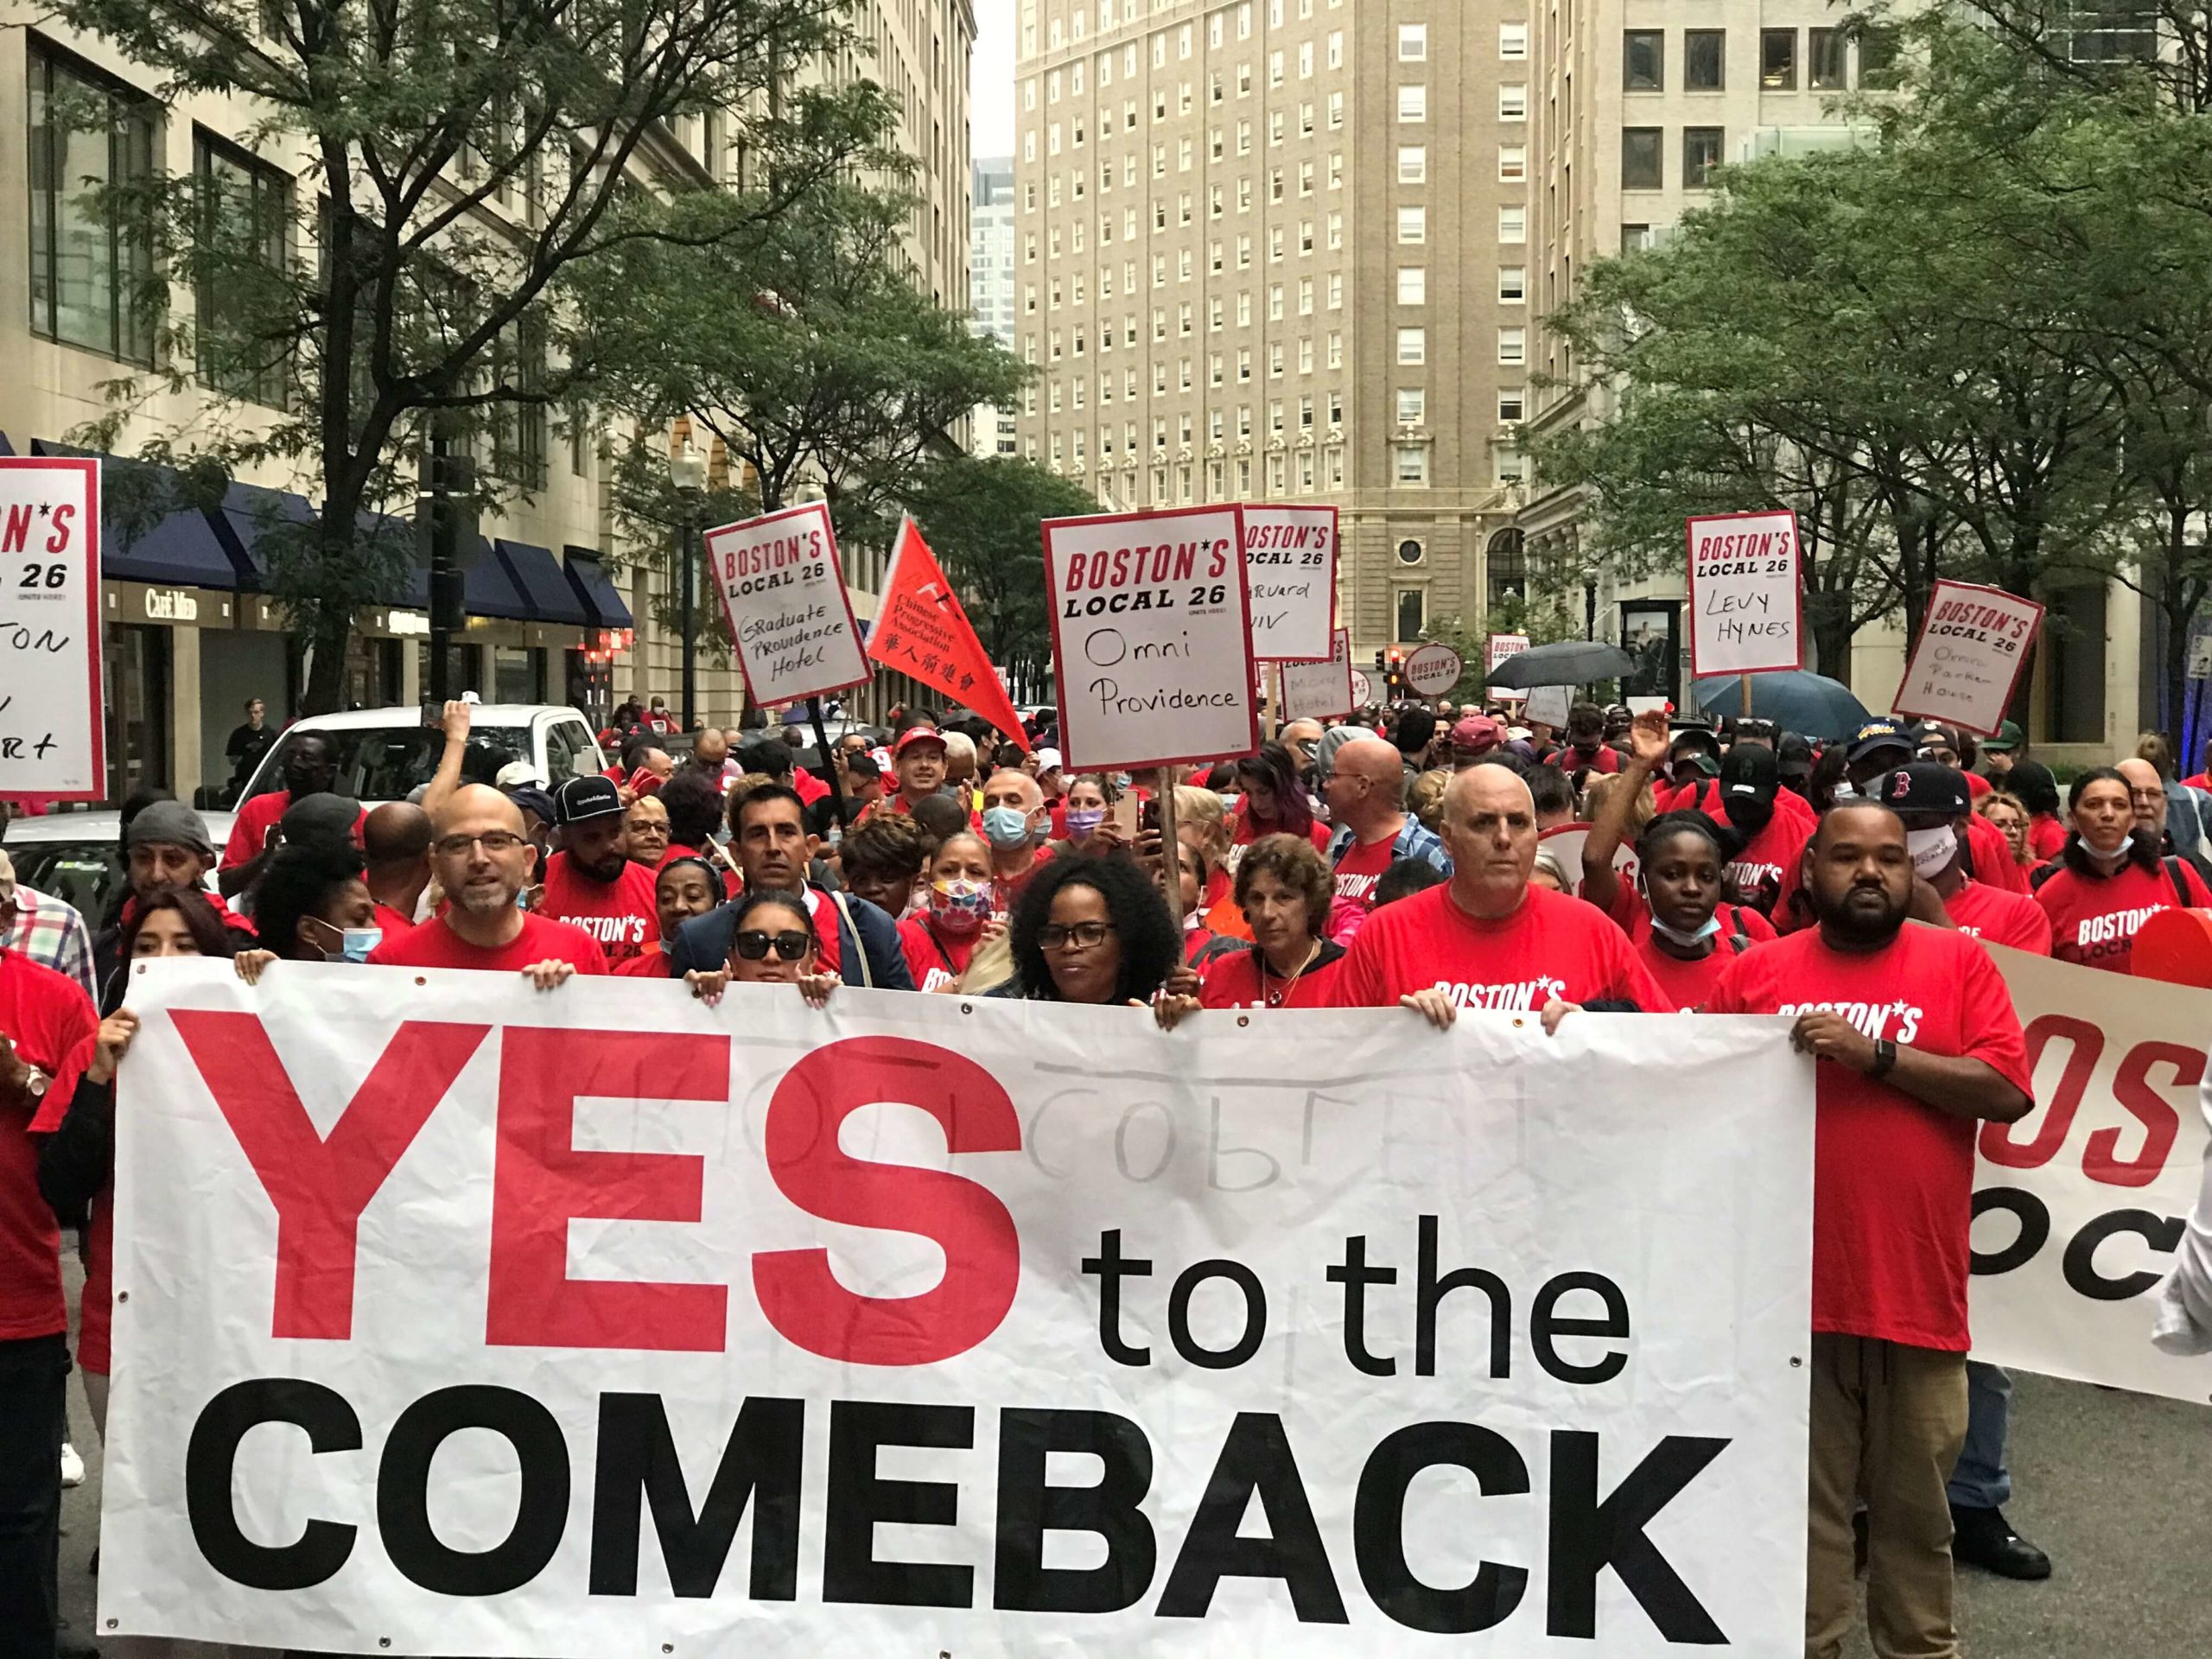 近千名波士顿酒店工人游行集会要求重返工作岗位 市长珍妮议员费连出席表示将对工人一直支持到底